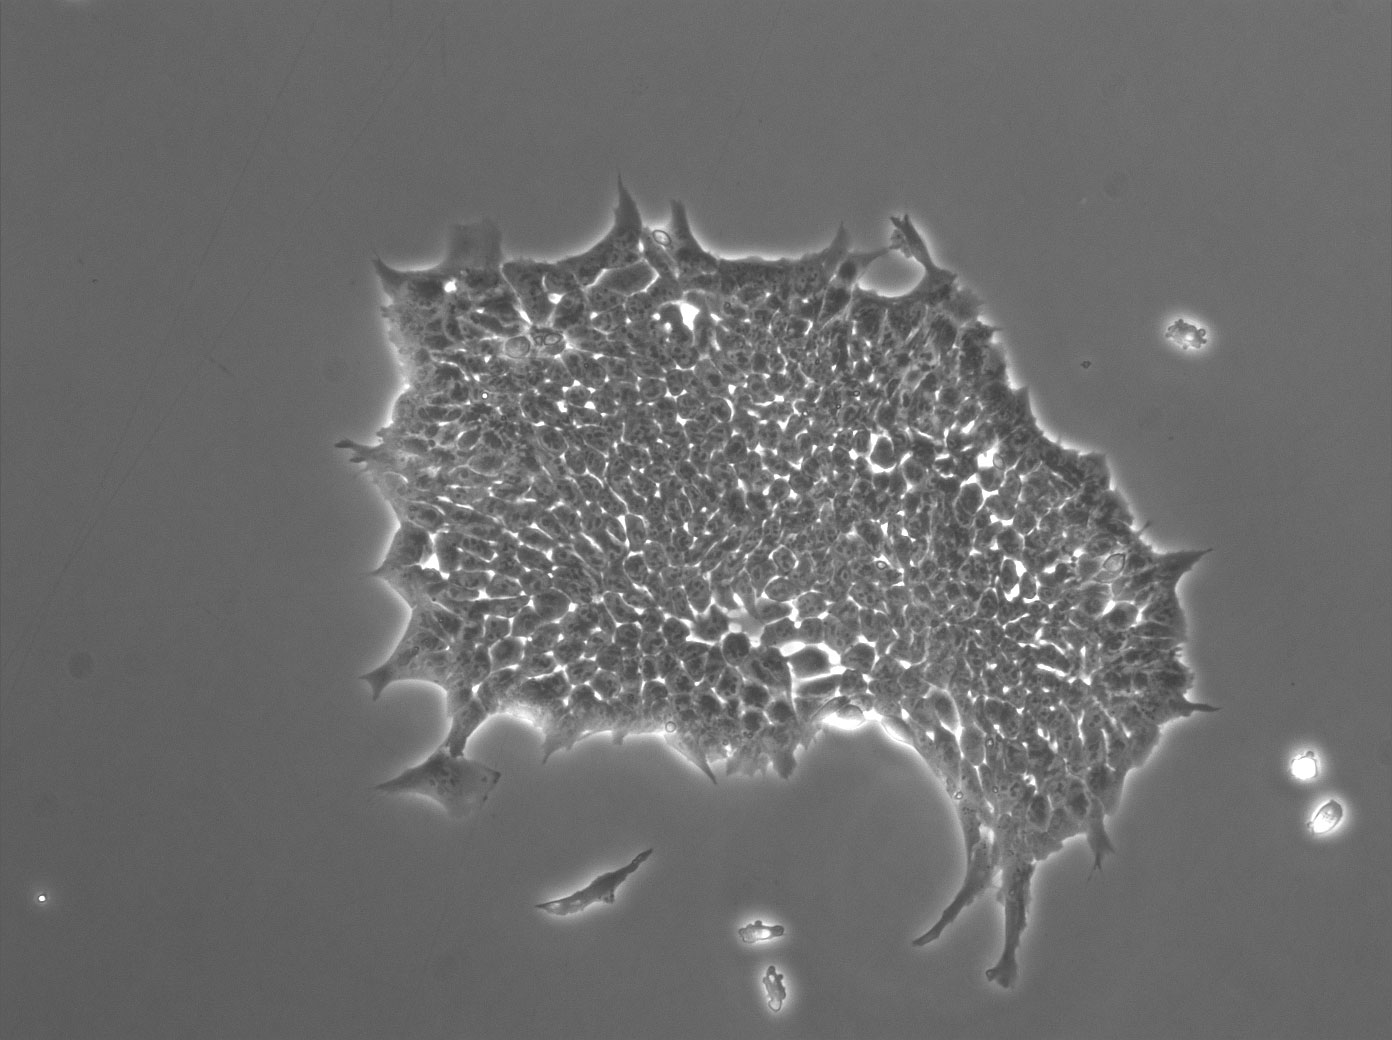 Imagen de contraste de fase de una colonia formada por células madre embrionarias de ratón que expresan a Ronin de forma estable. La colonia se formó a pesar de ser expuesta a un medio de cultivo de un tejido que normalmente hubiera causado diferenciación.